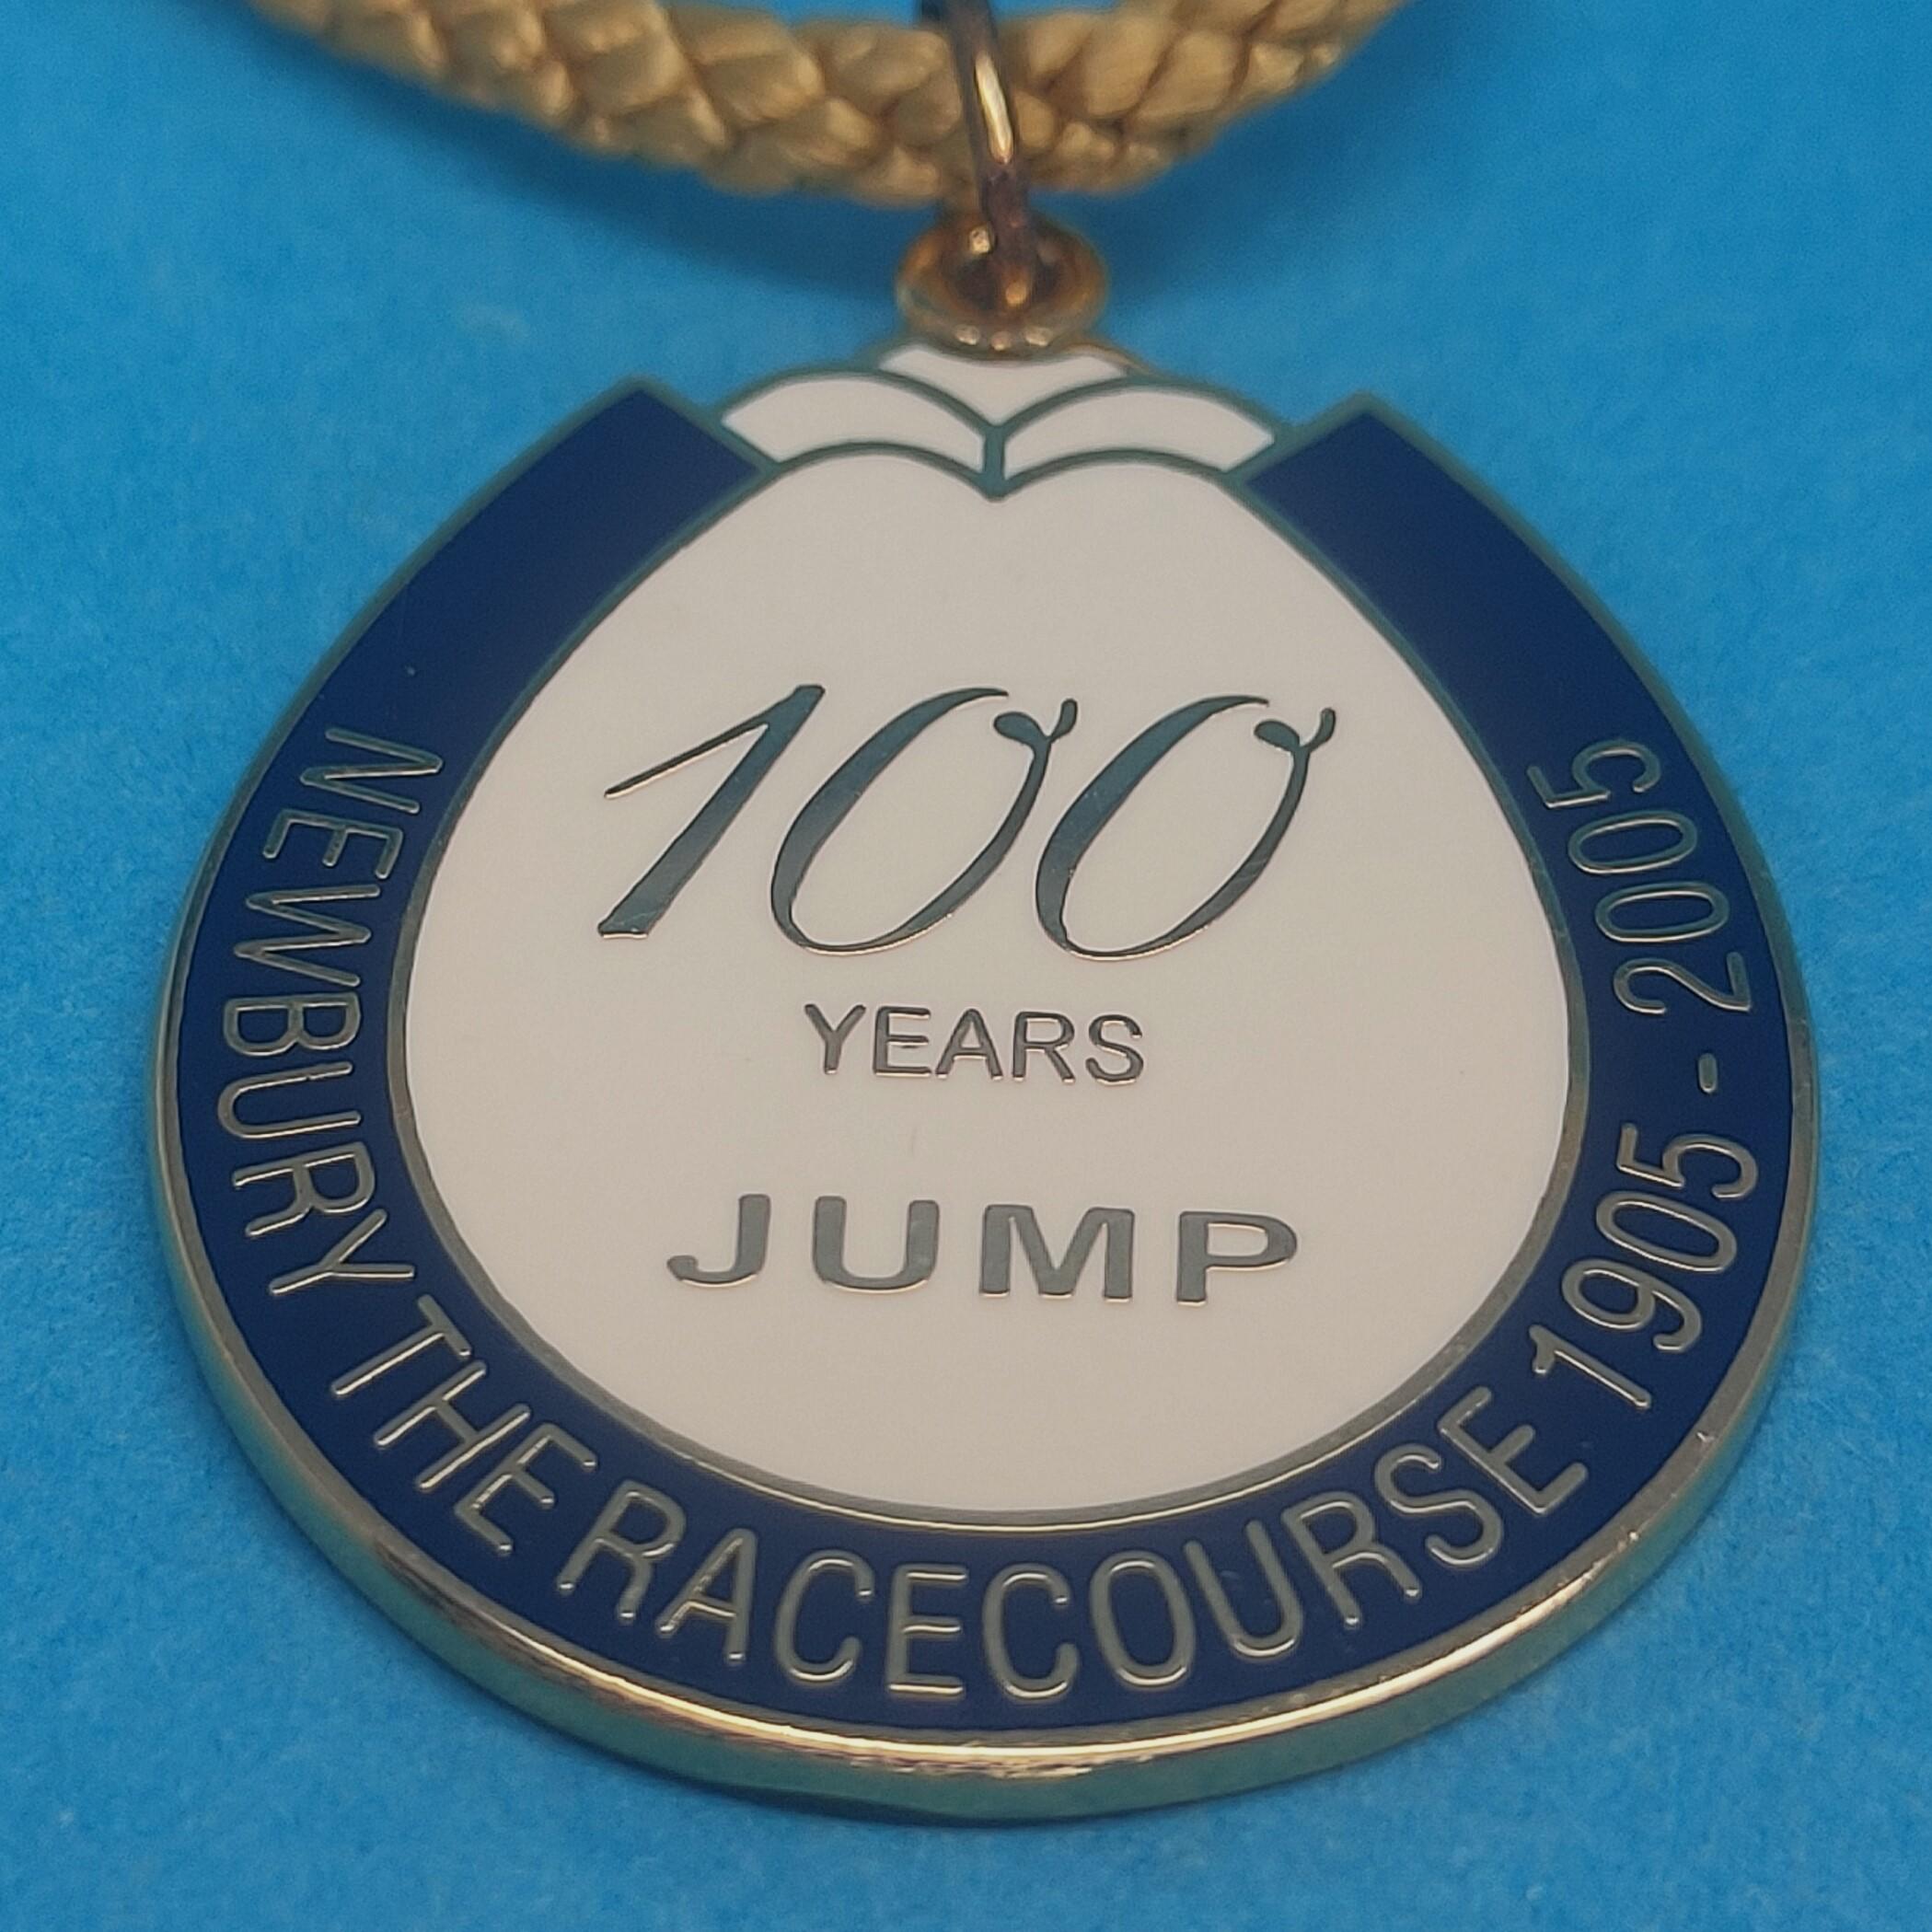 Newbury 2005 Jumps 100 Years